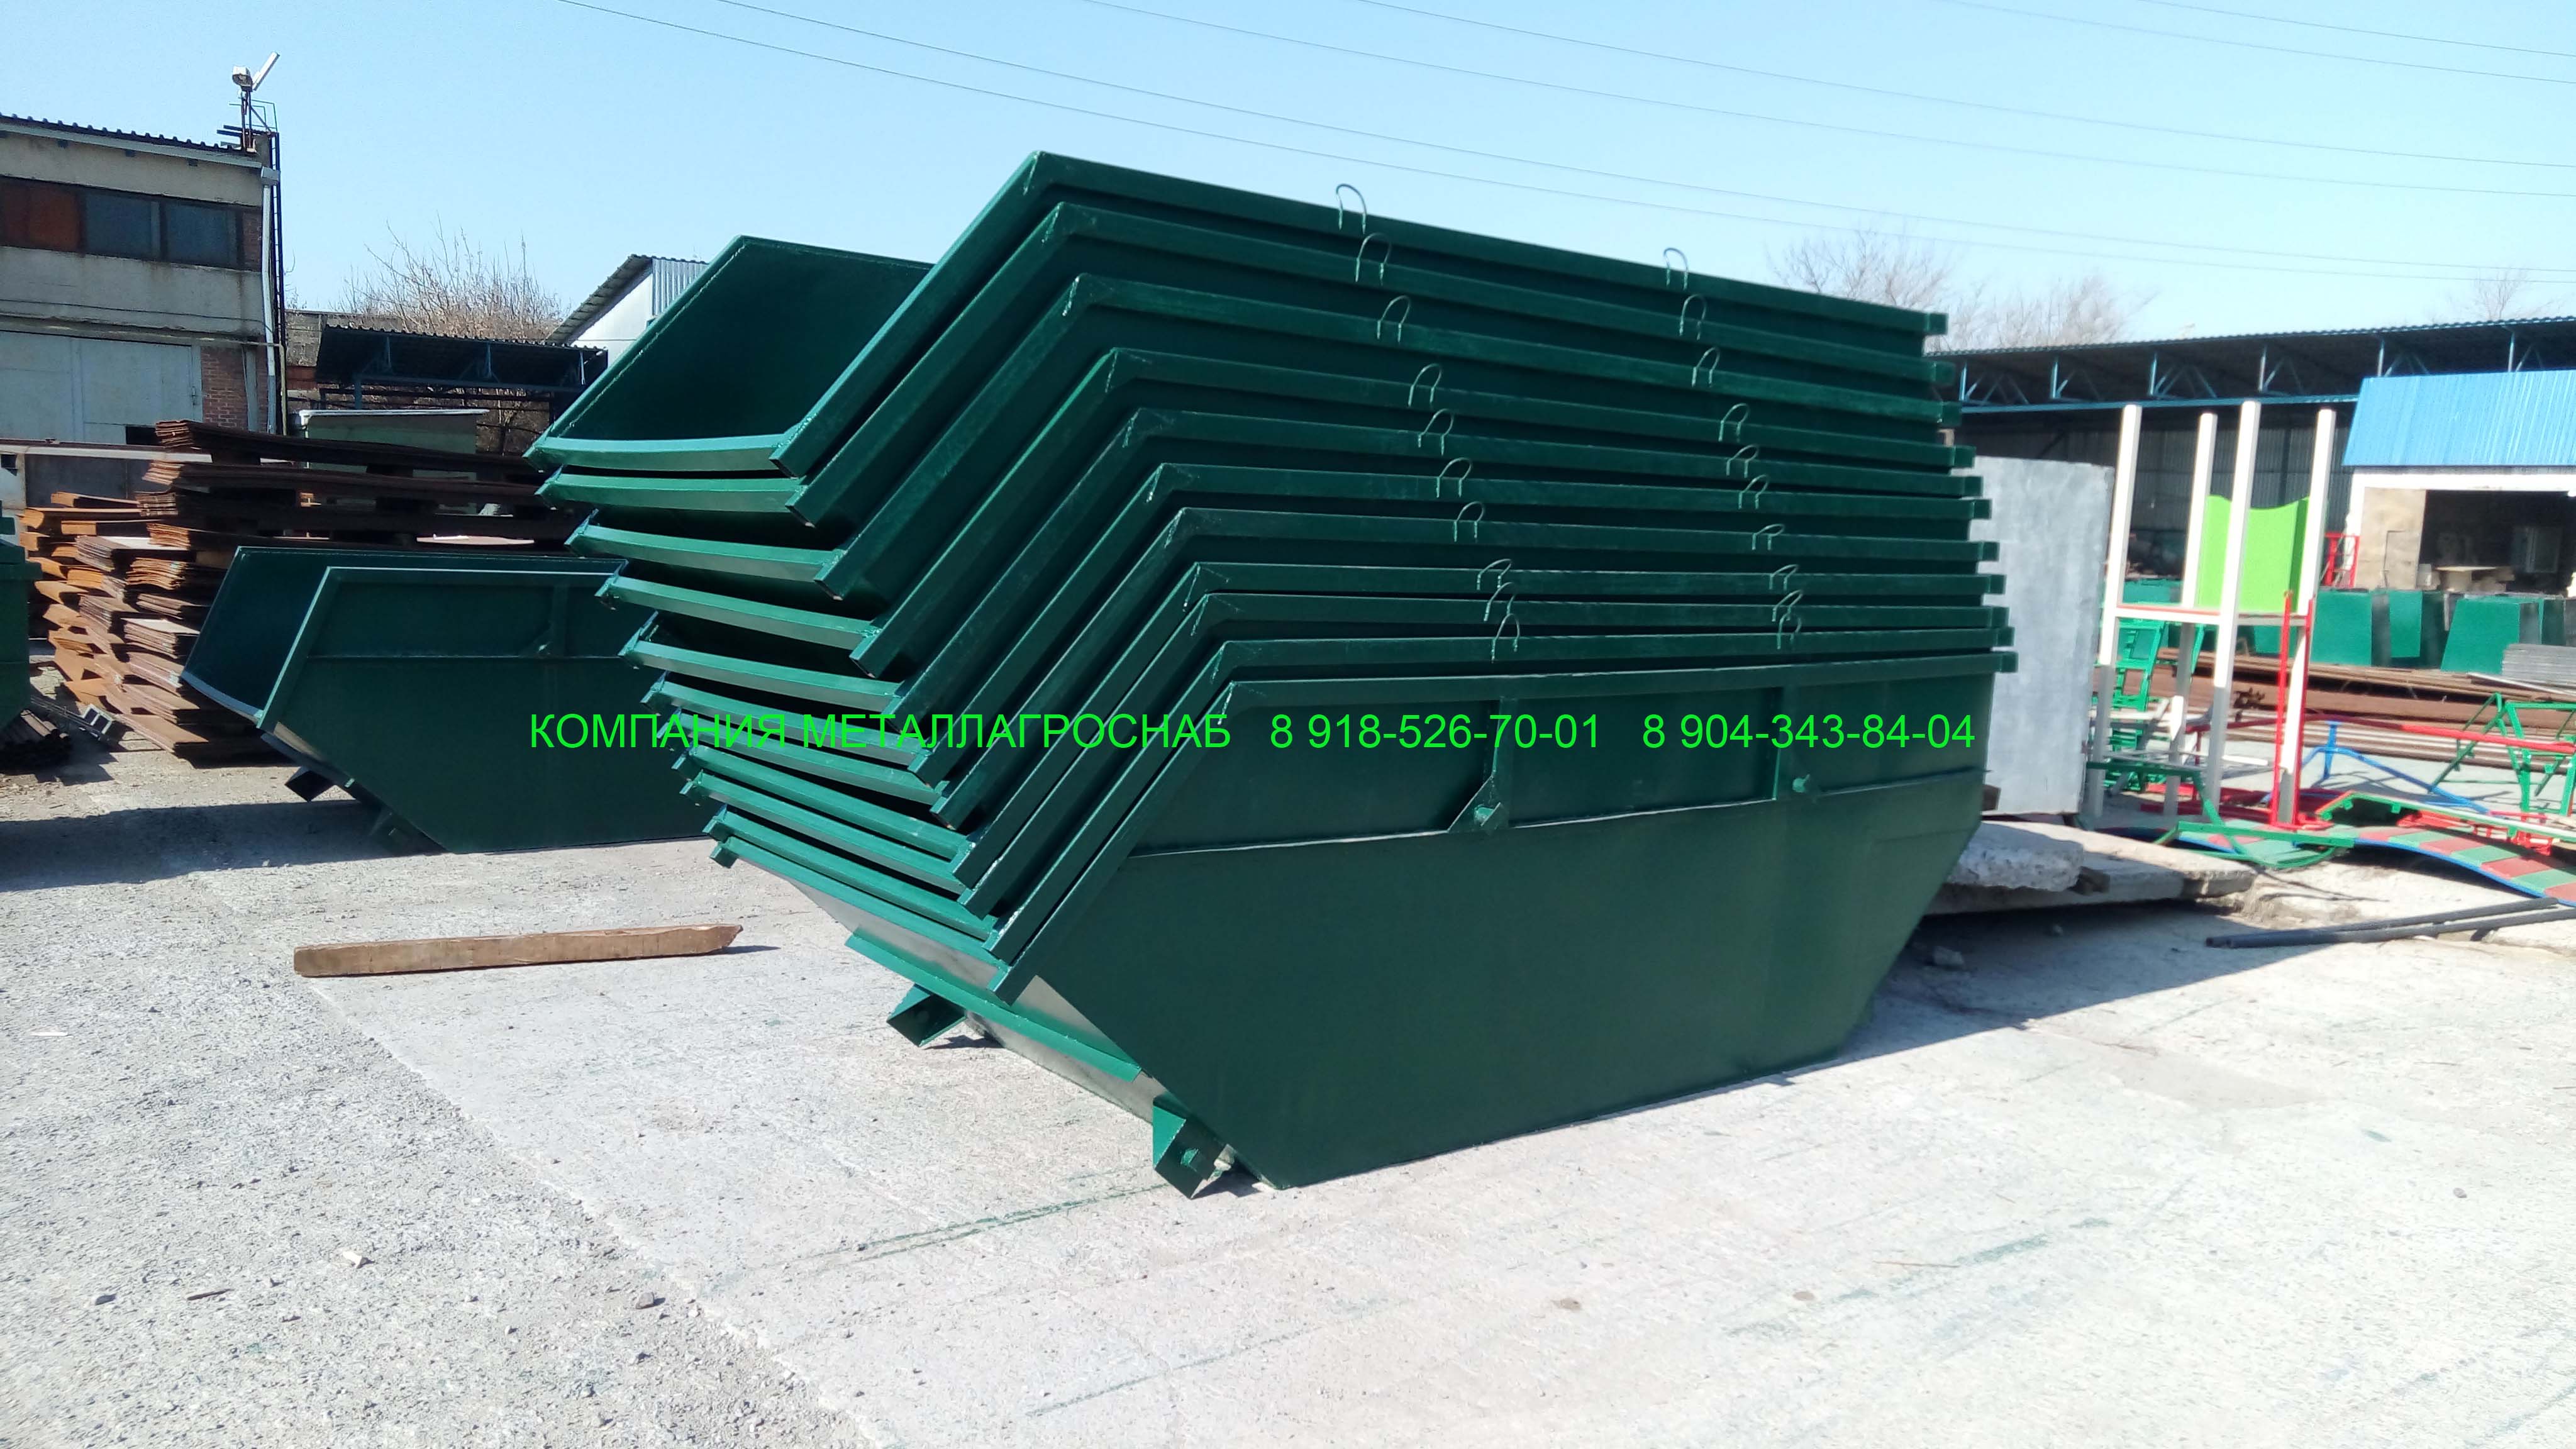 Бункер для мусора ТБО и ТКО объёмом 7 м3 сталь 2 мм.Купить бункер 7 м3 по цене 26500 руб, в наличии.